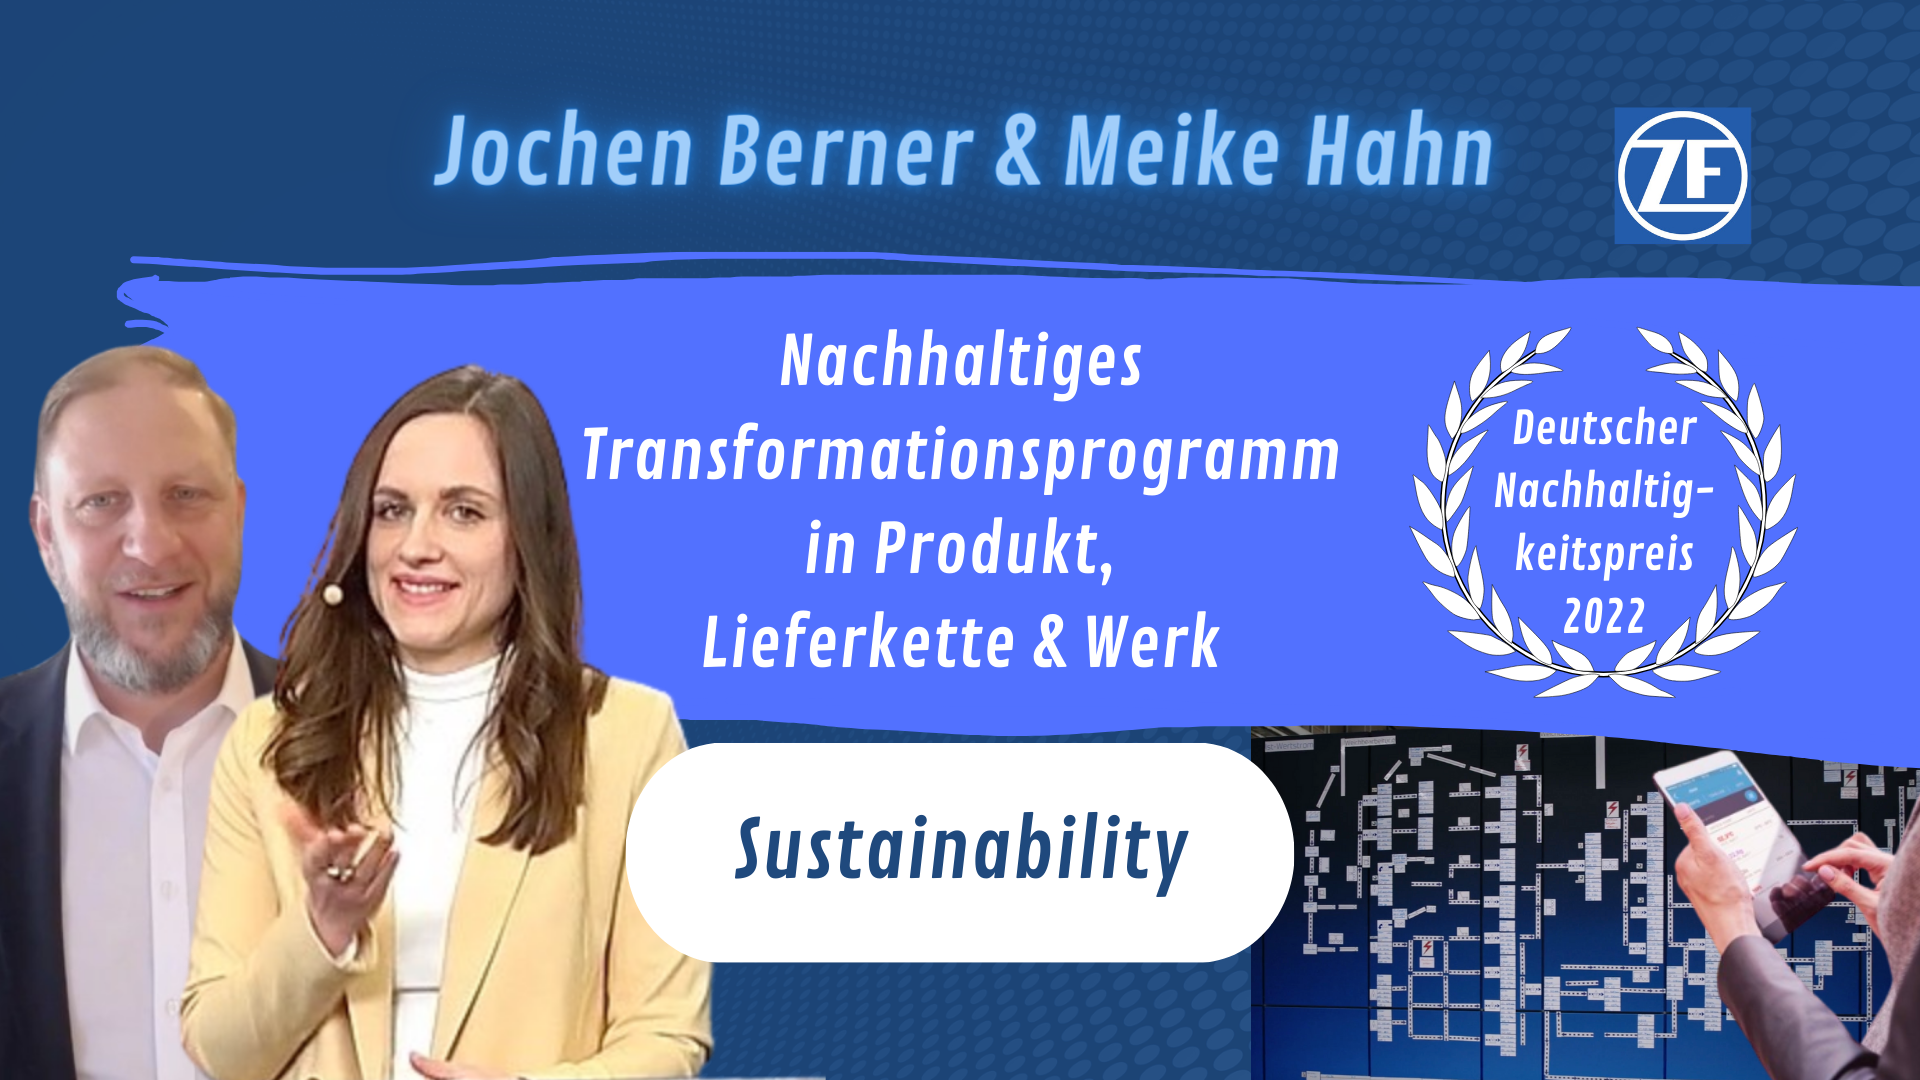 GREEN - Sustainability mit Jochen Berner & Meike Hahn